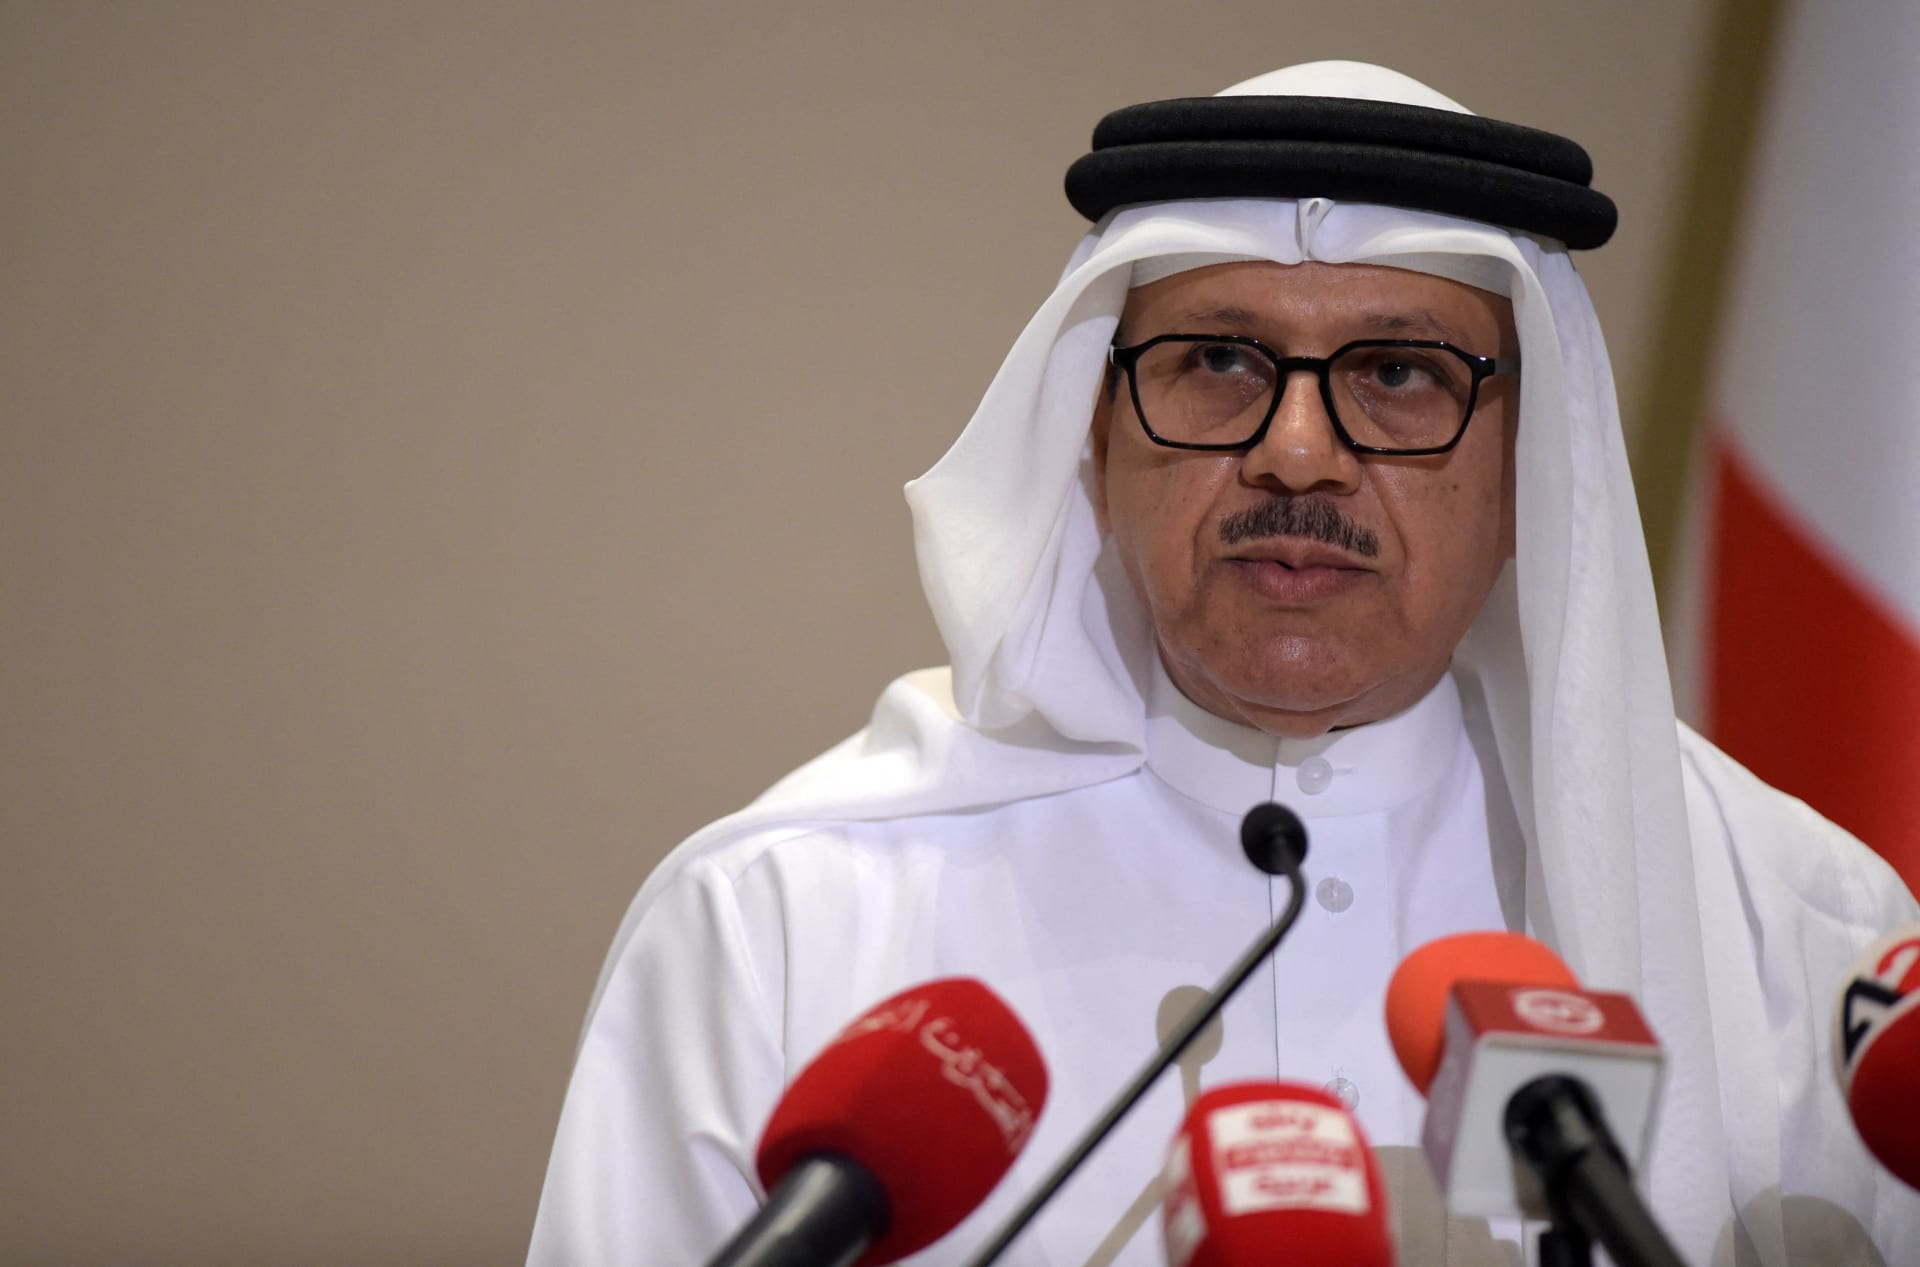 البحرين تستدعي القائم بالأعمال العراقي بسبب "مخالفته المتكررة للأعراف الدبلوماسية"